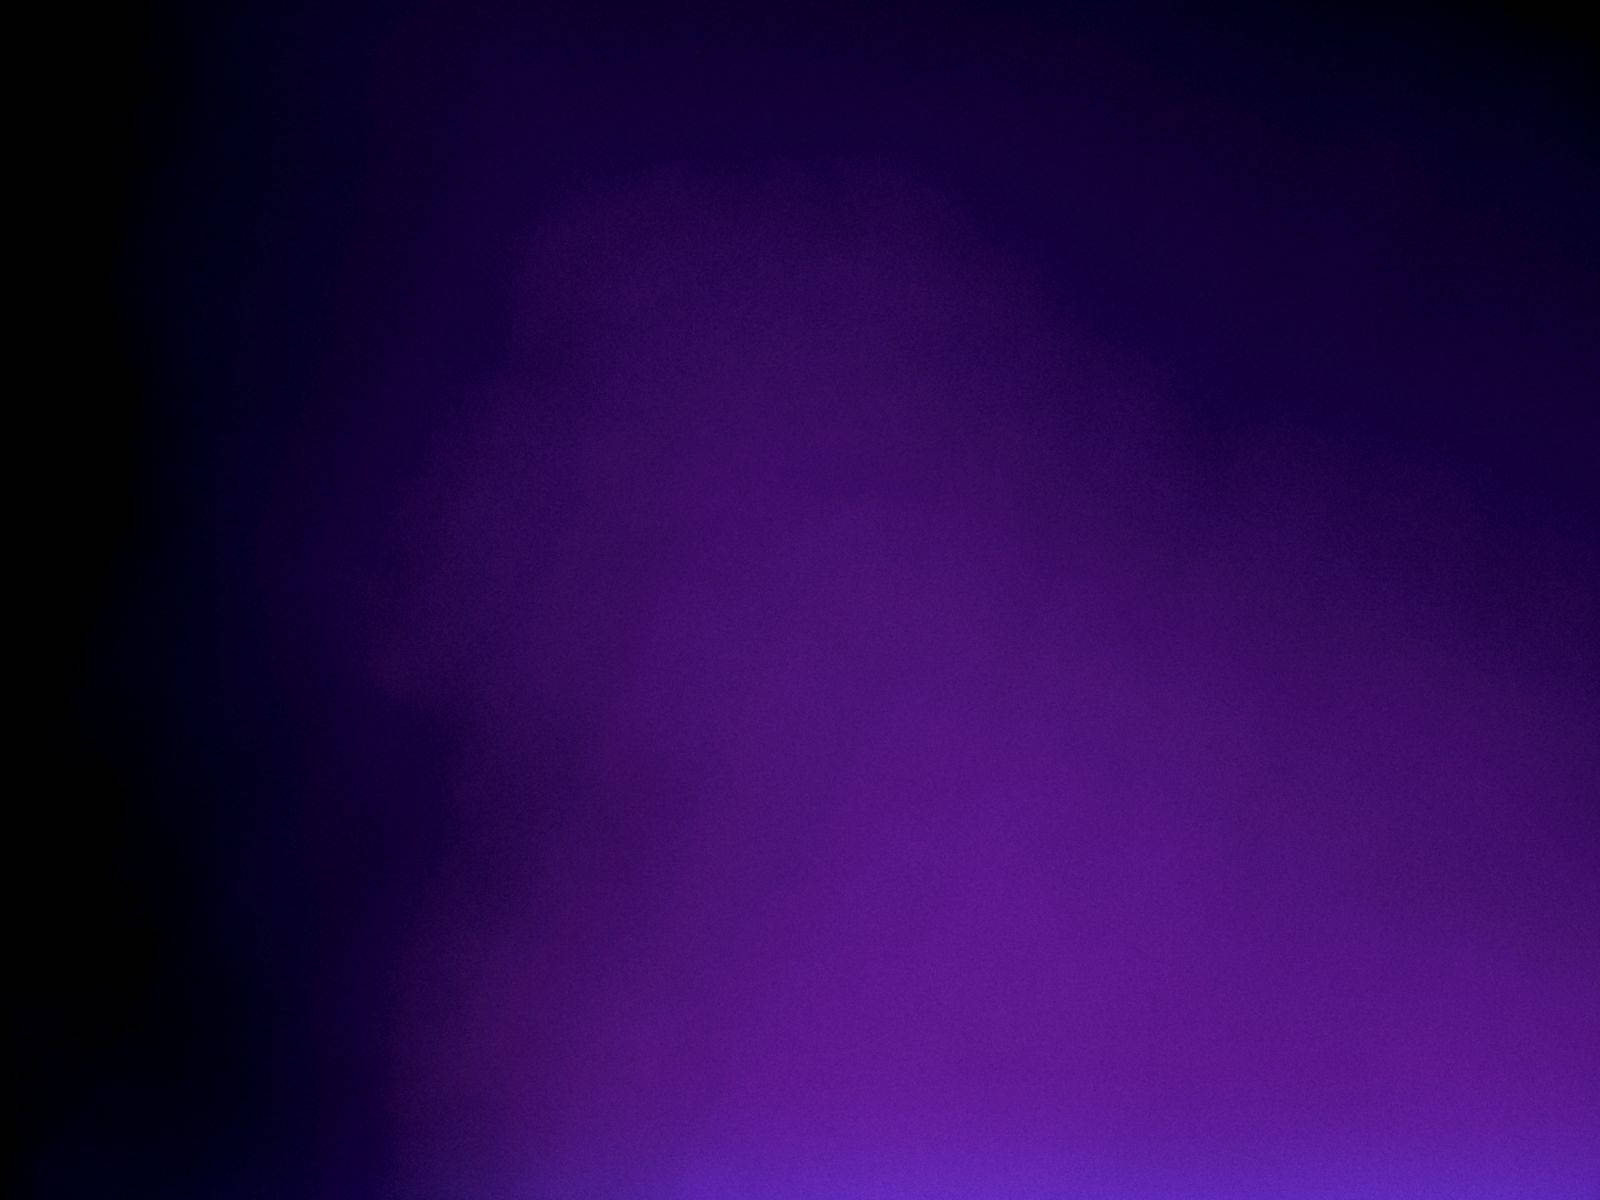 Minimalist Dark Violet Gradient Background